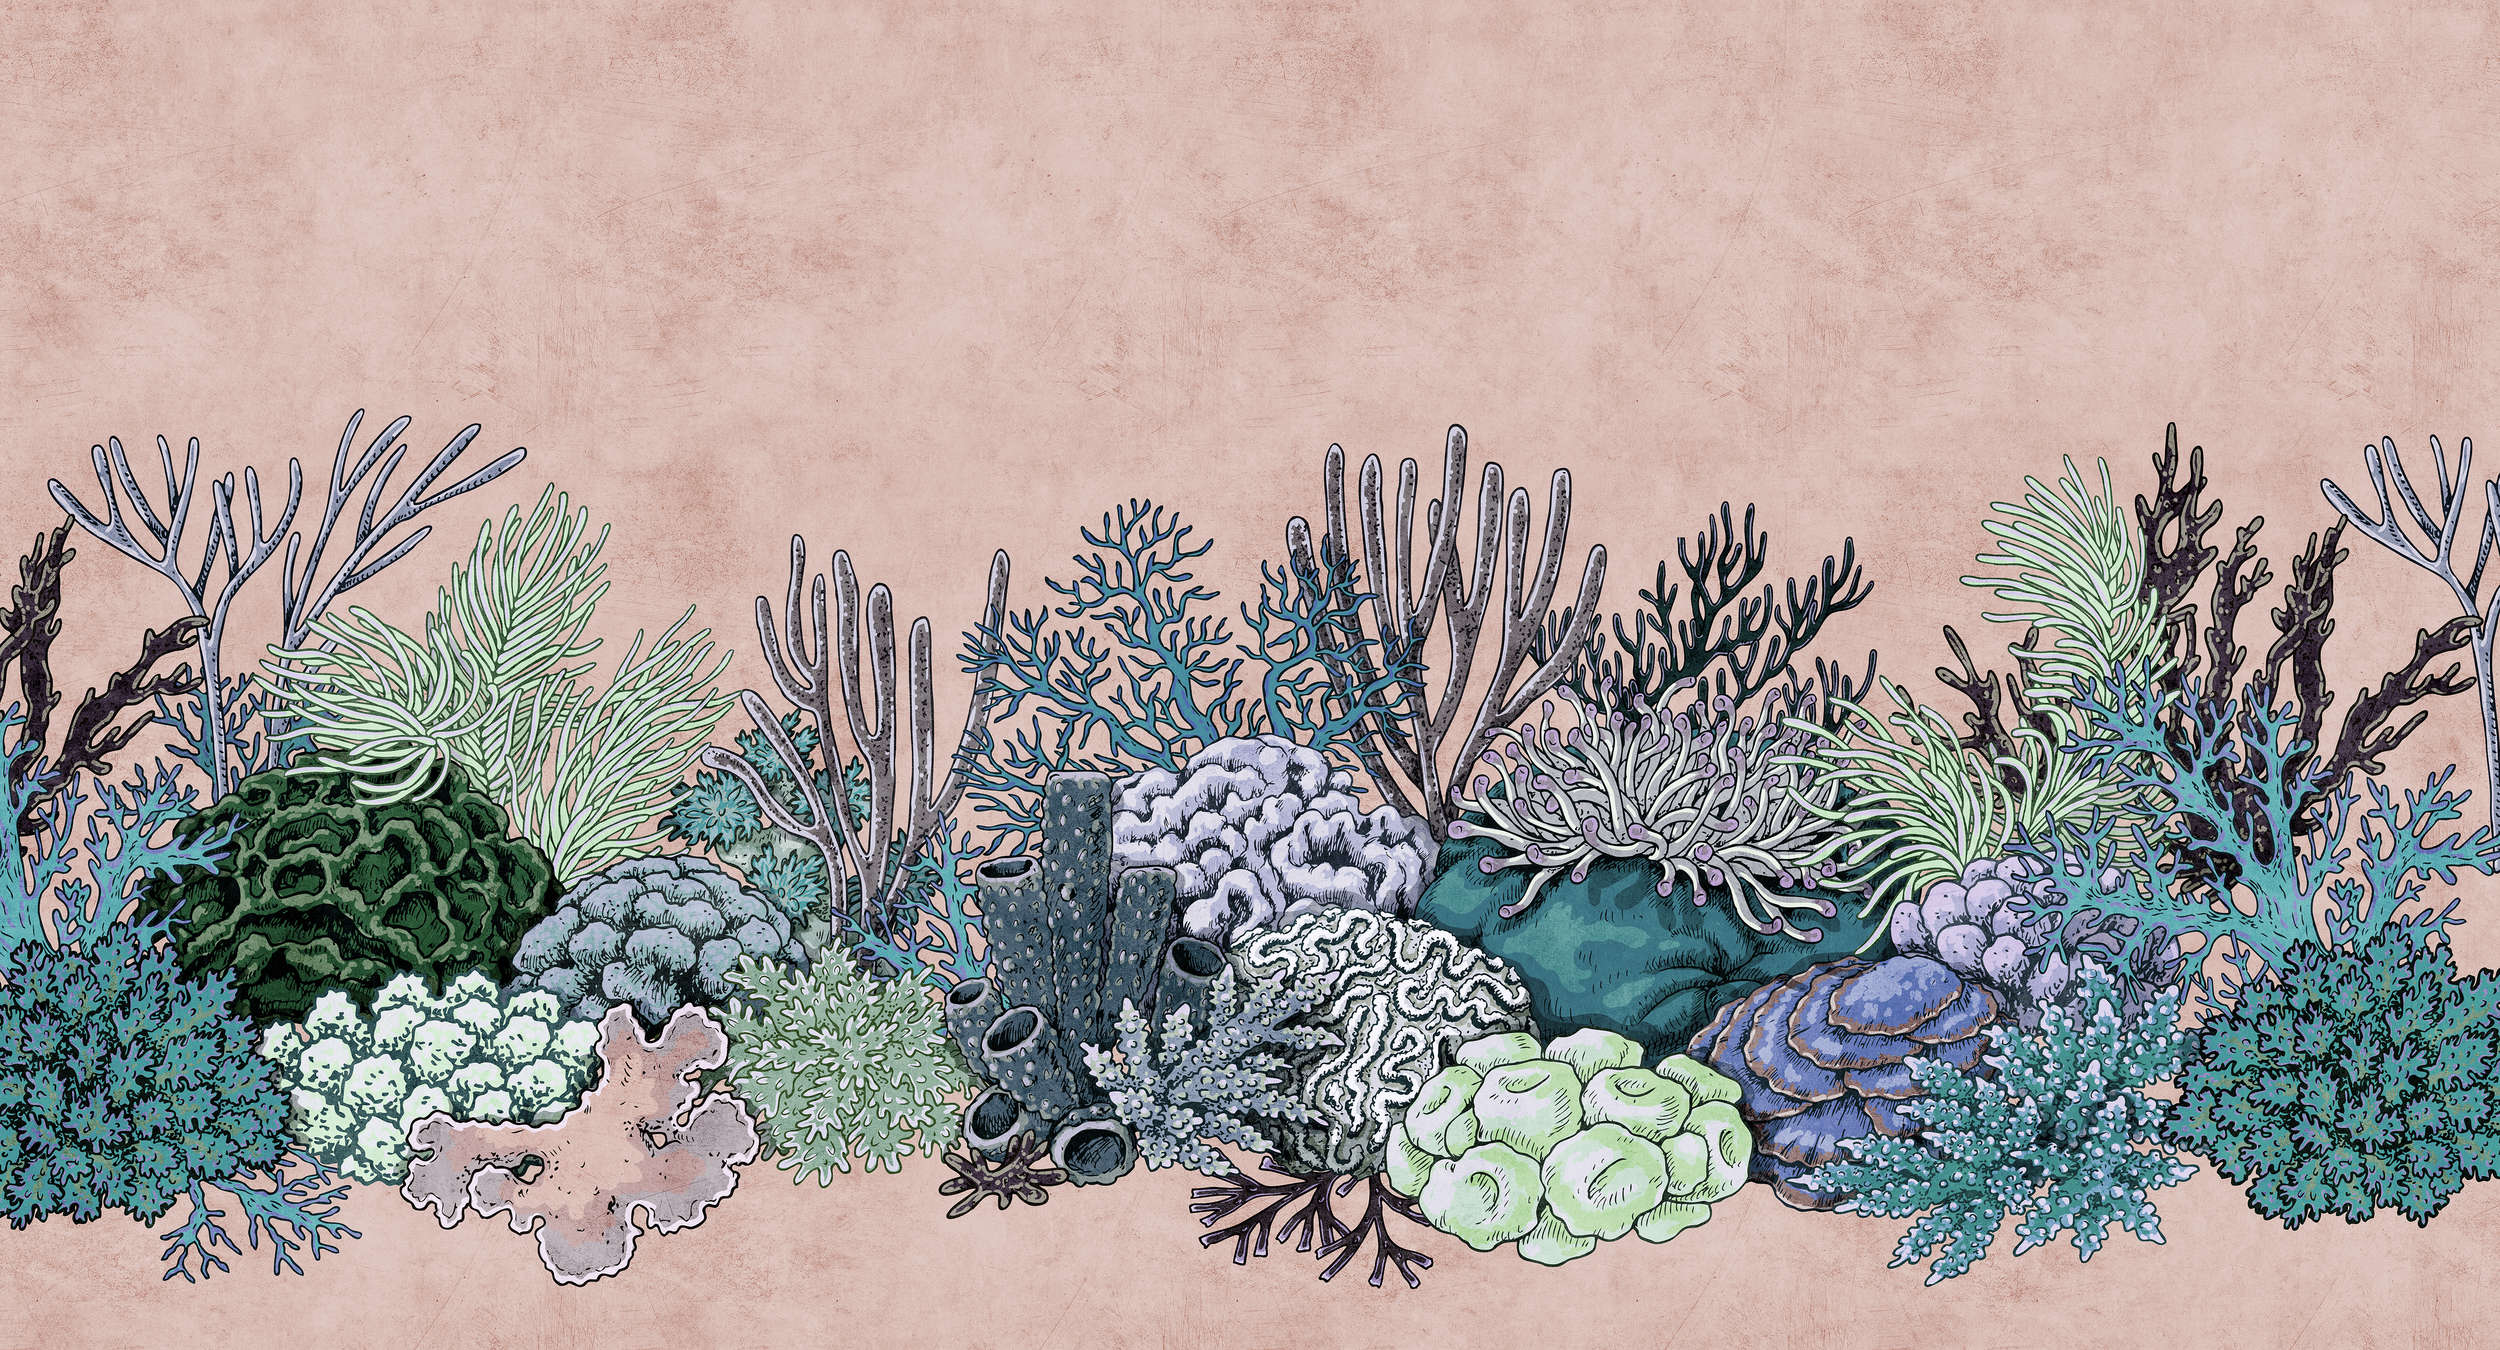             Octopus's Garden 2 - Papier peint corail à structure buvard style dessin - vert, rose | Nacré intissé lisse
        